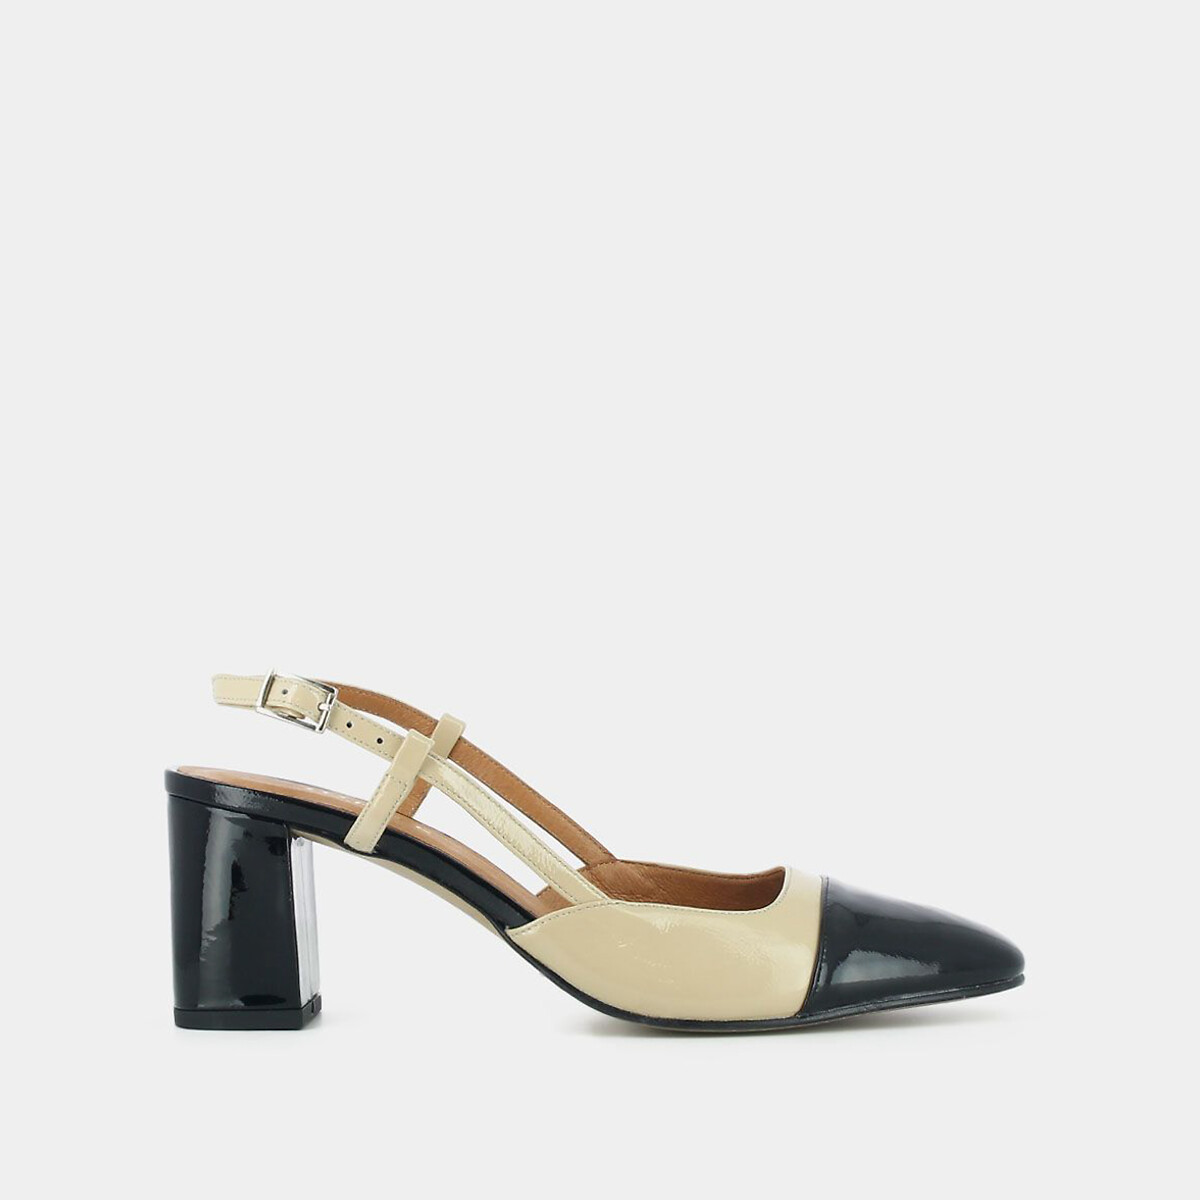 Dhapop leather slingback heels, beige/black, Jonak | La Redoute